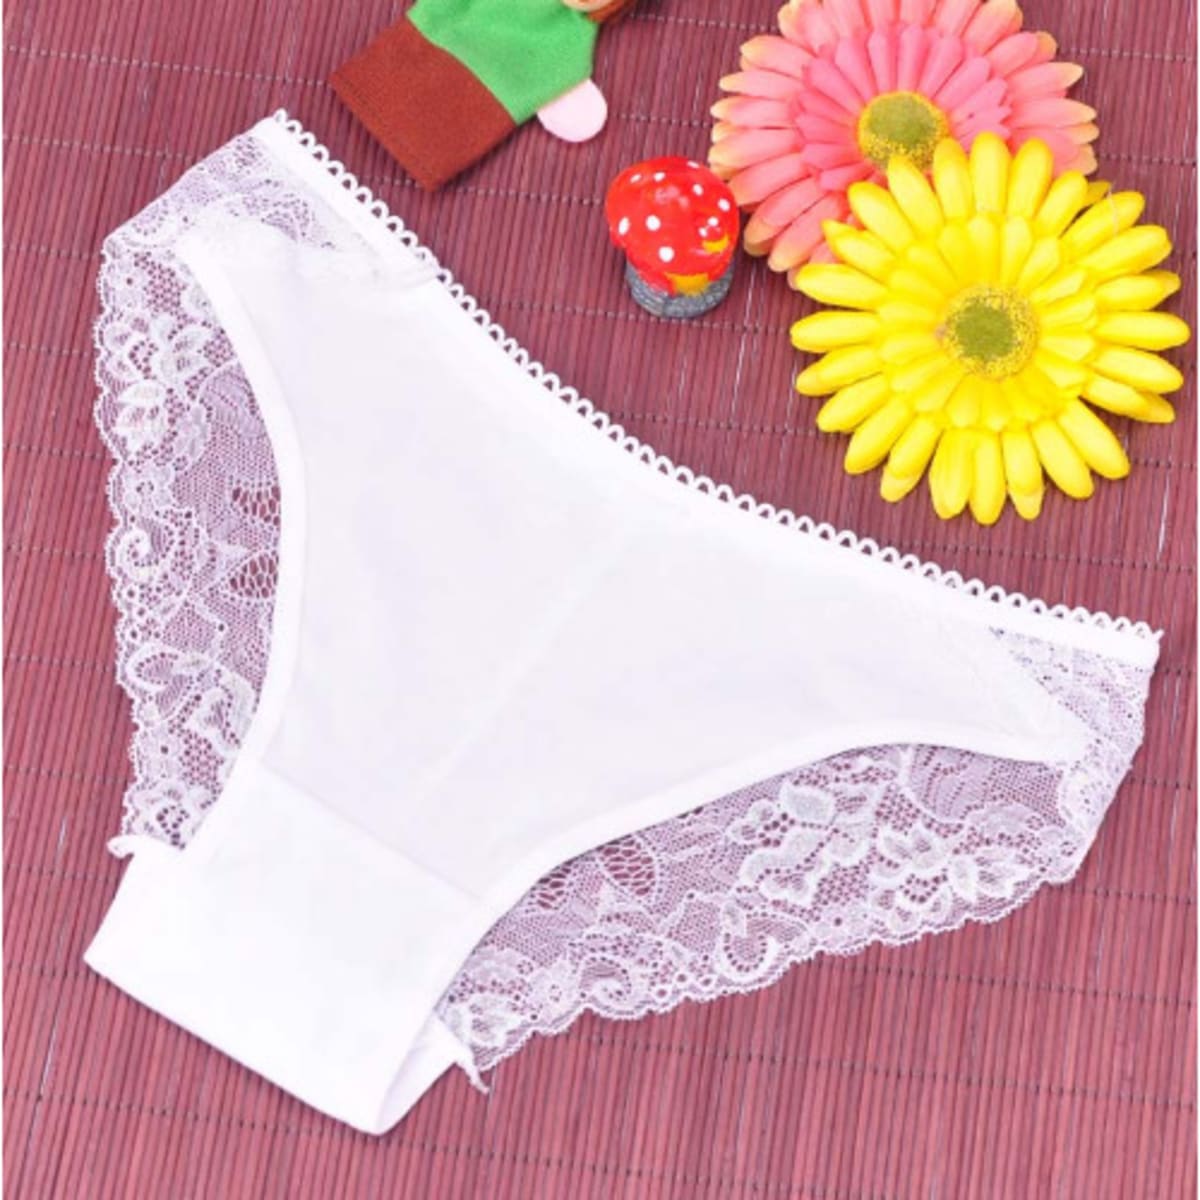 Ladies' White Cotton Underpants - 5 Pieces